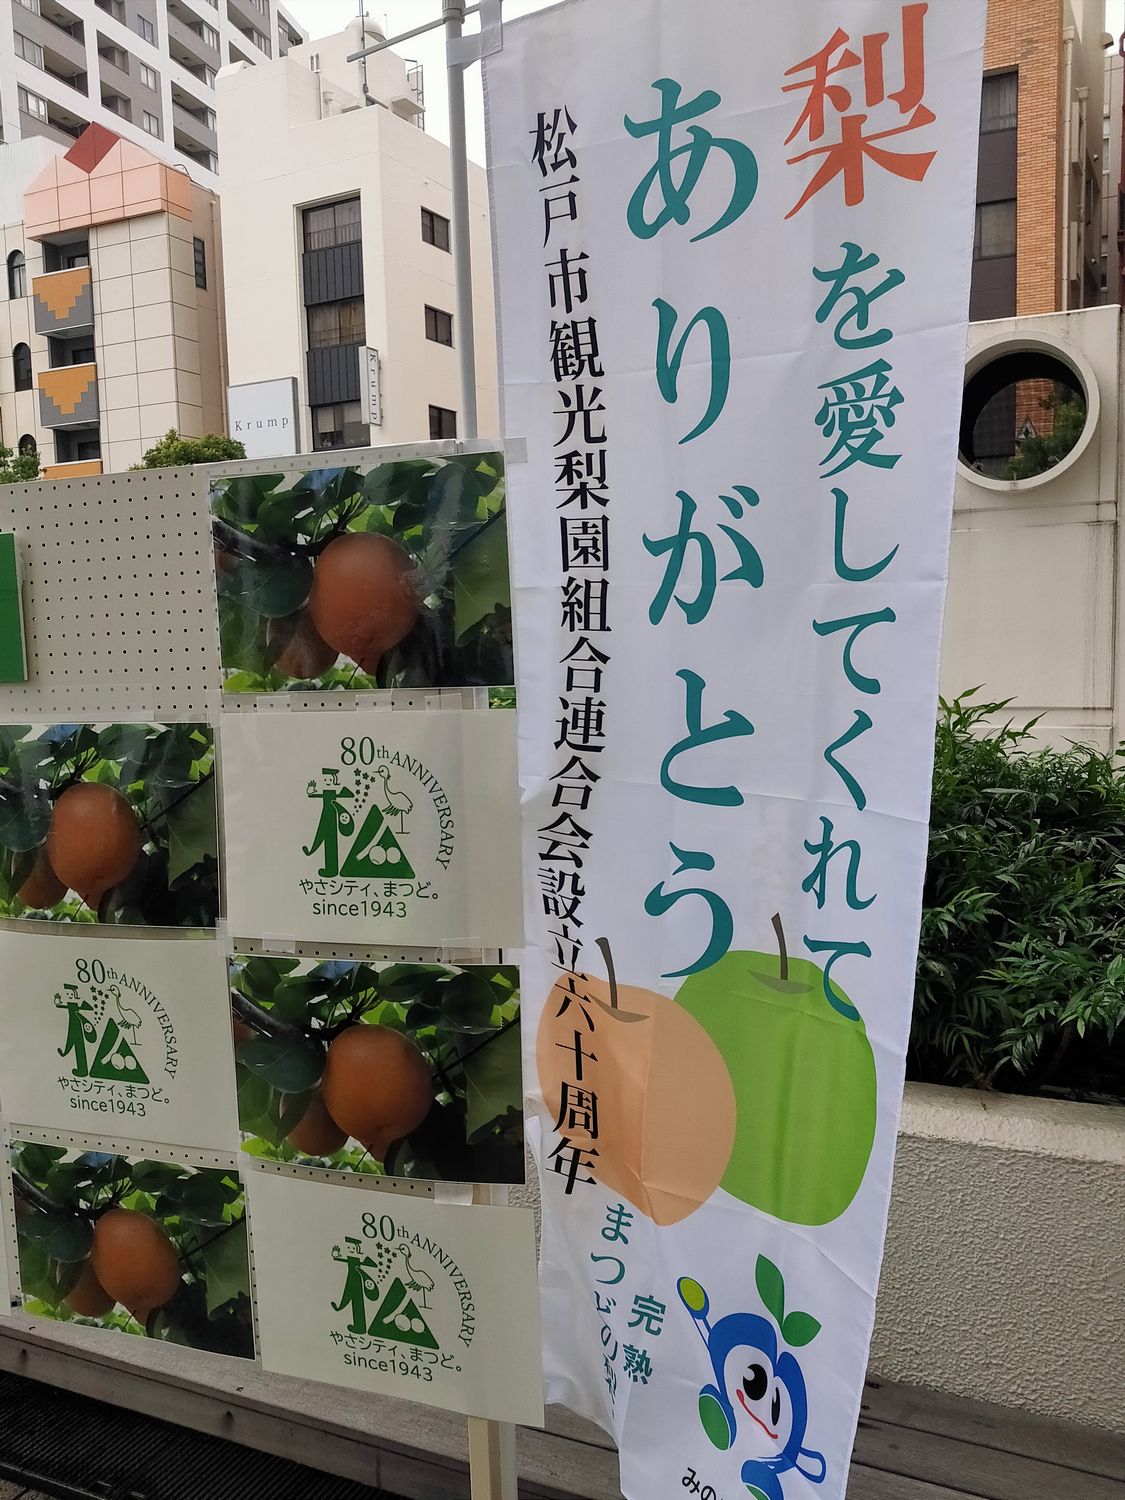 松戸市観光梨園組合連合会60周年事業「梨を愛してくれてありがとう」9月9日開催